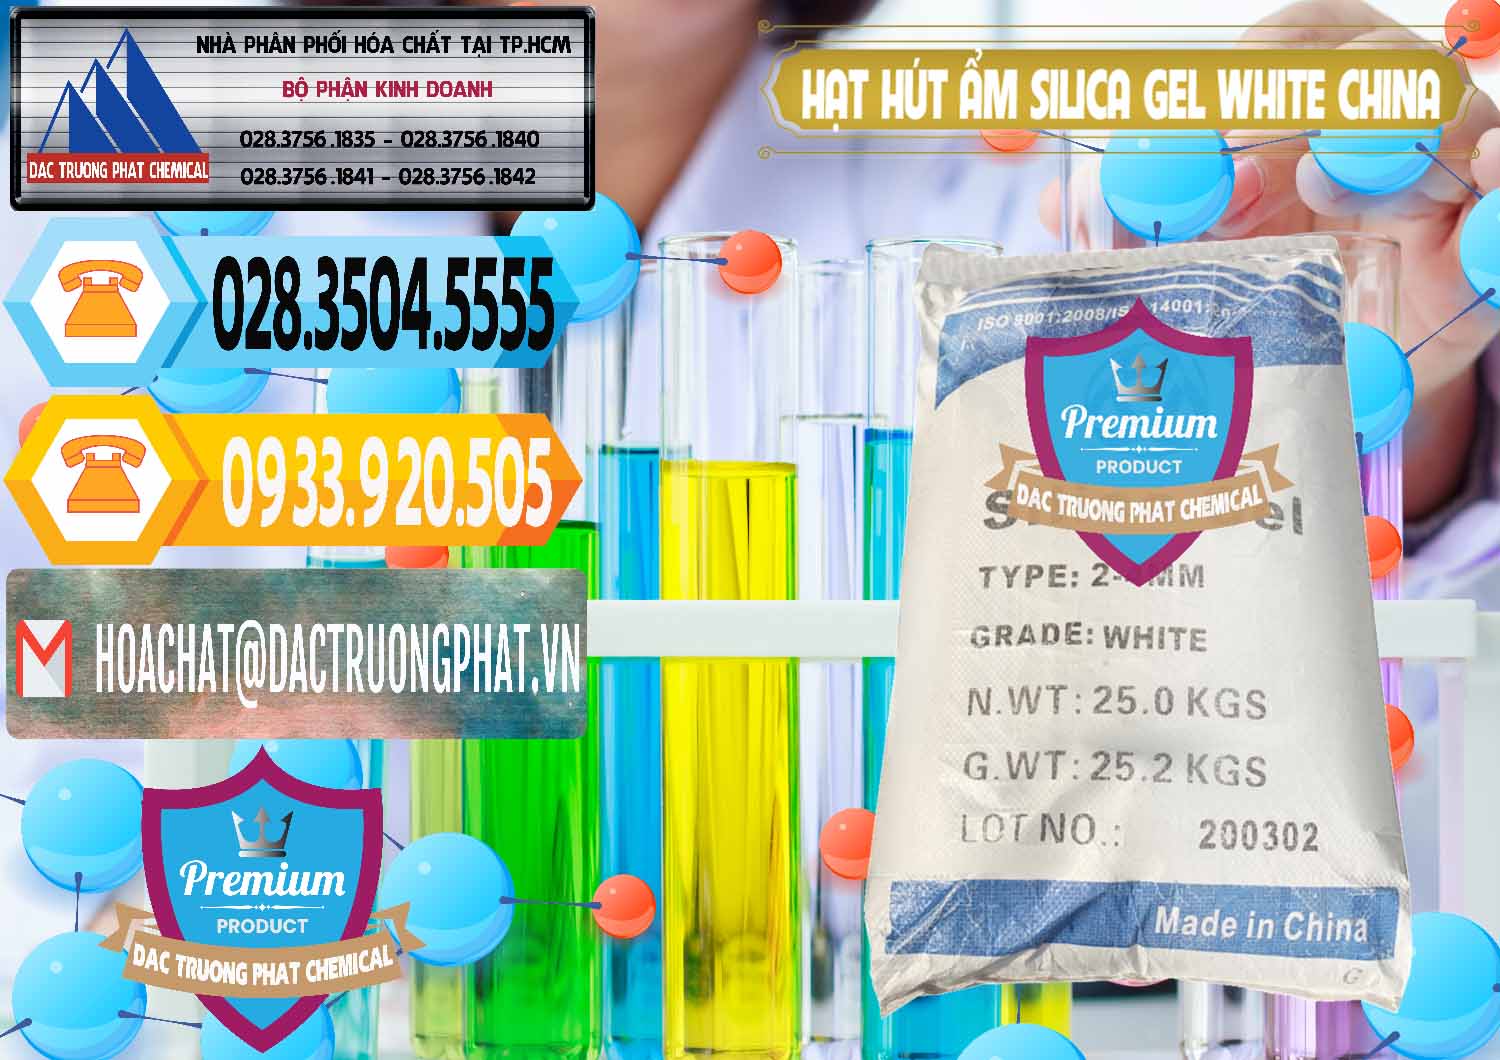 Cung cấp - bán Hạt Hút Ẩm Silica Gel White Trung Quốc China - 0297 - Cty chuyên phân phối ( bán ) hóa chất tại TP.HCM - hoachattayrua.net